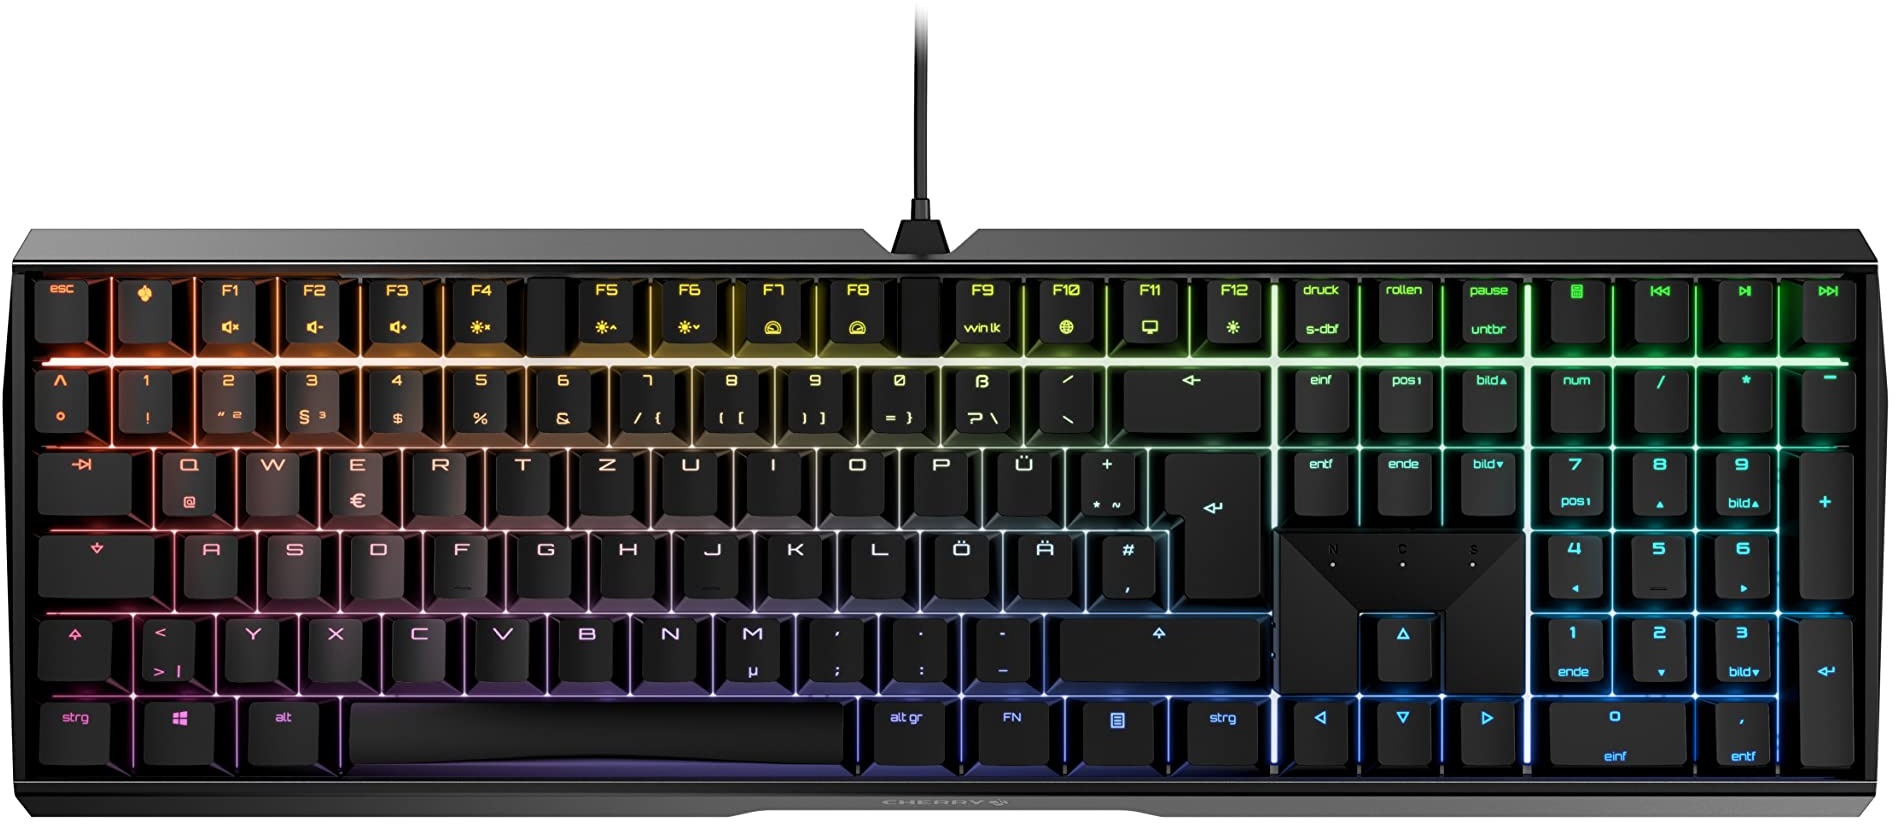 CHERRY MX BOARD 3.0 S, kabelgebundene Gaming-Tastatur mit RGB-Beleuchtung, Deutsches Layout (QWERTZ), MX BROWN Switches, Schwarz